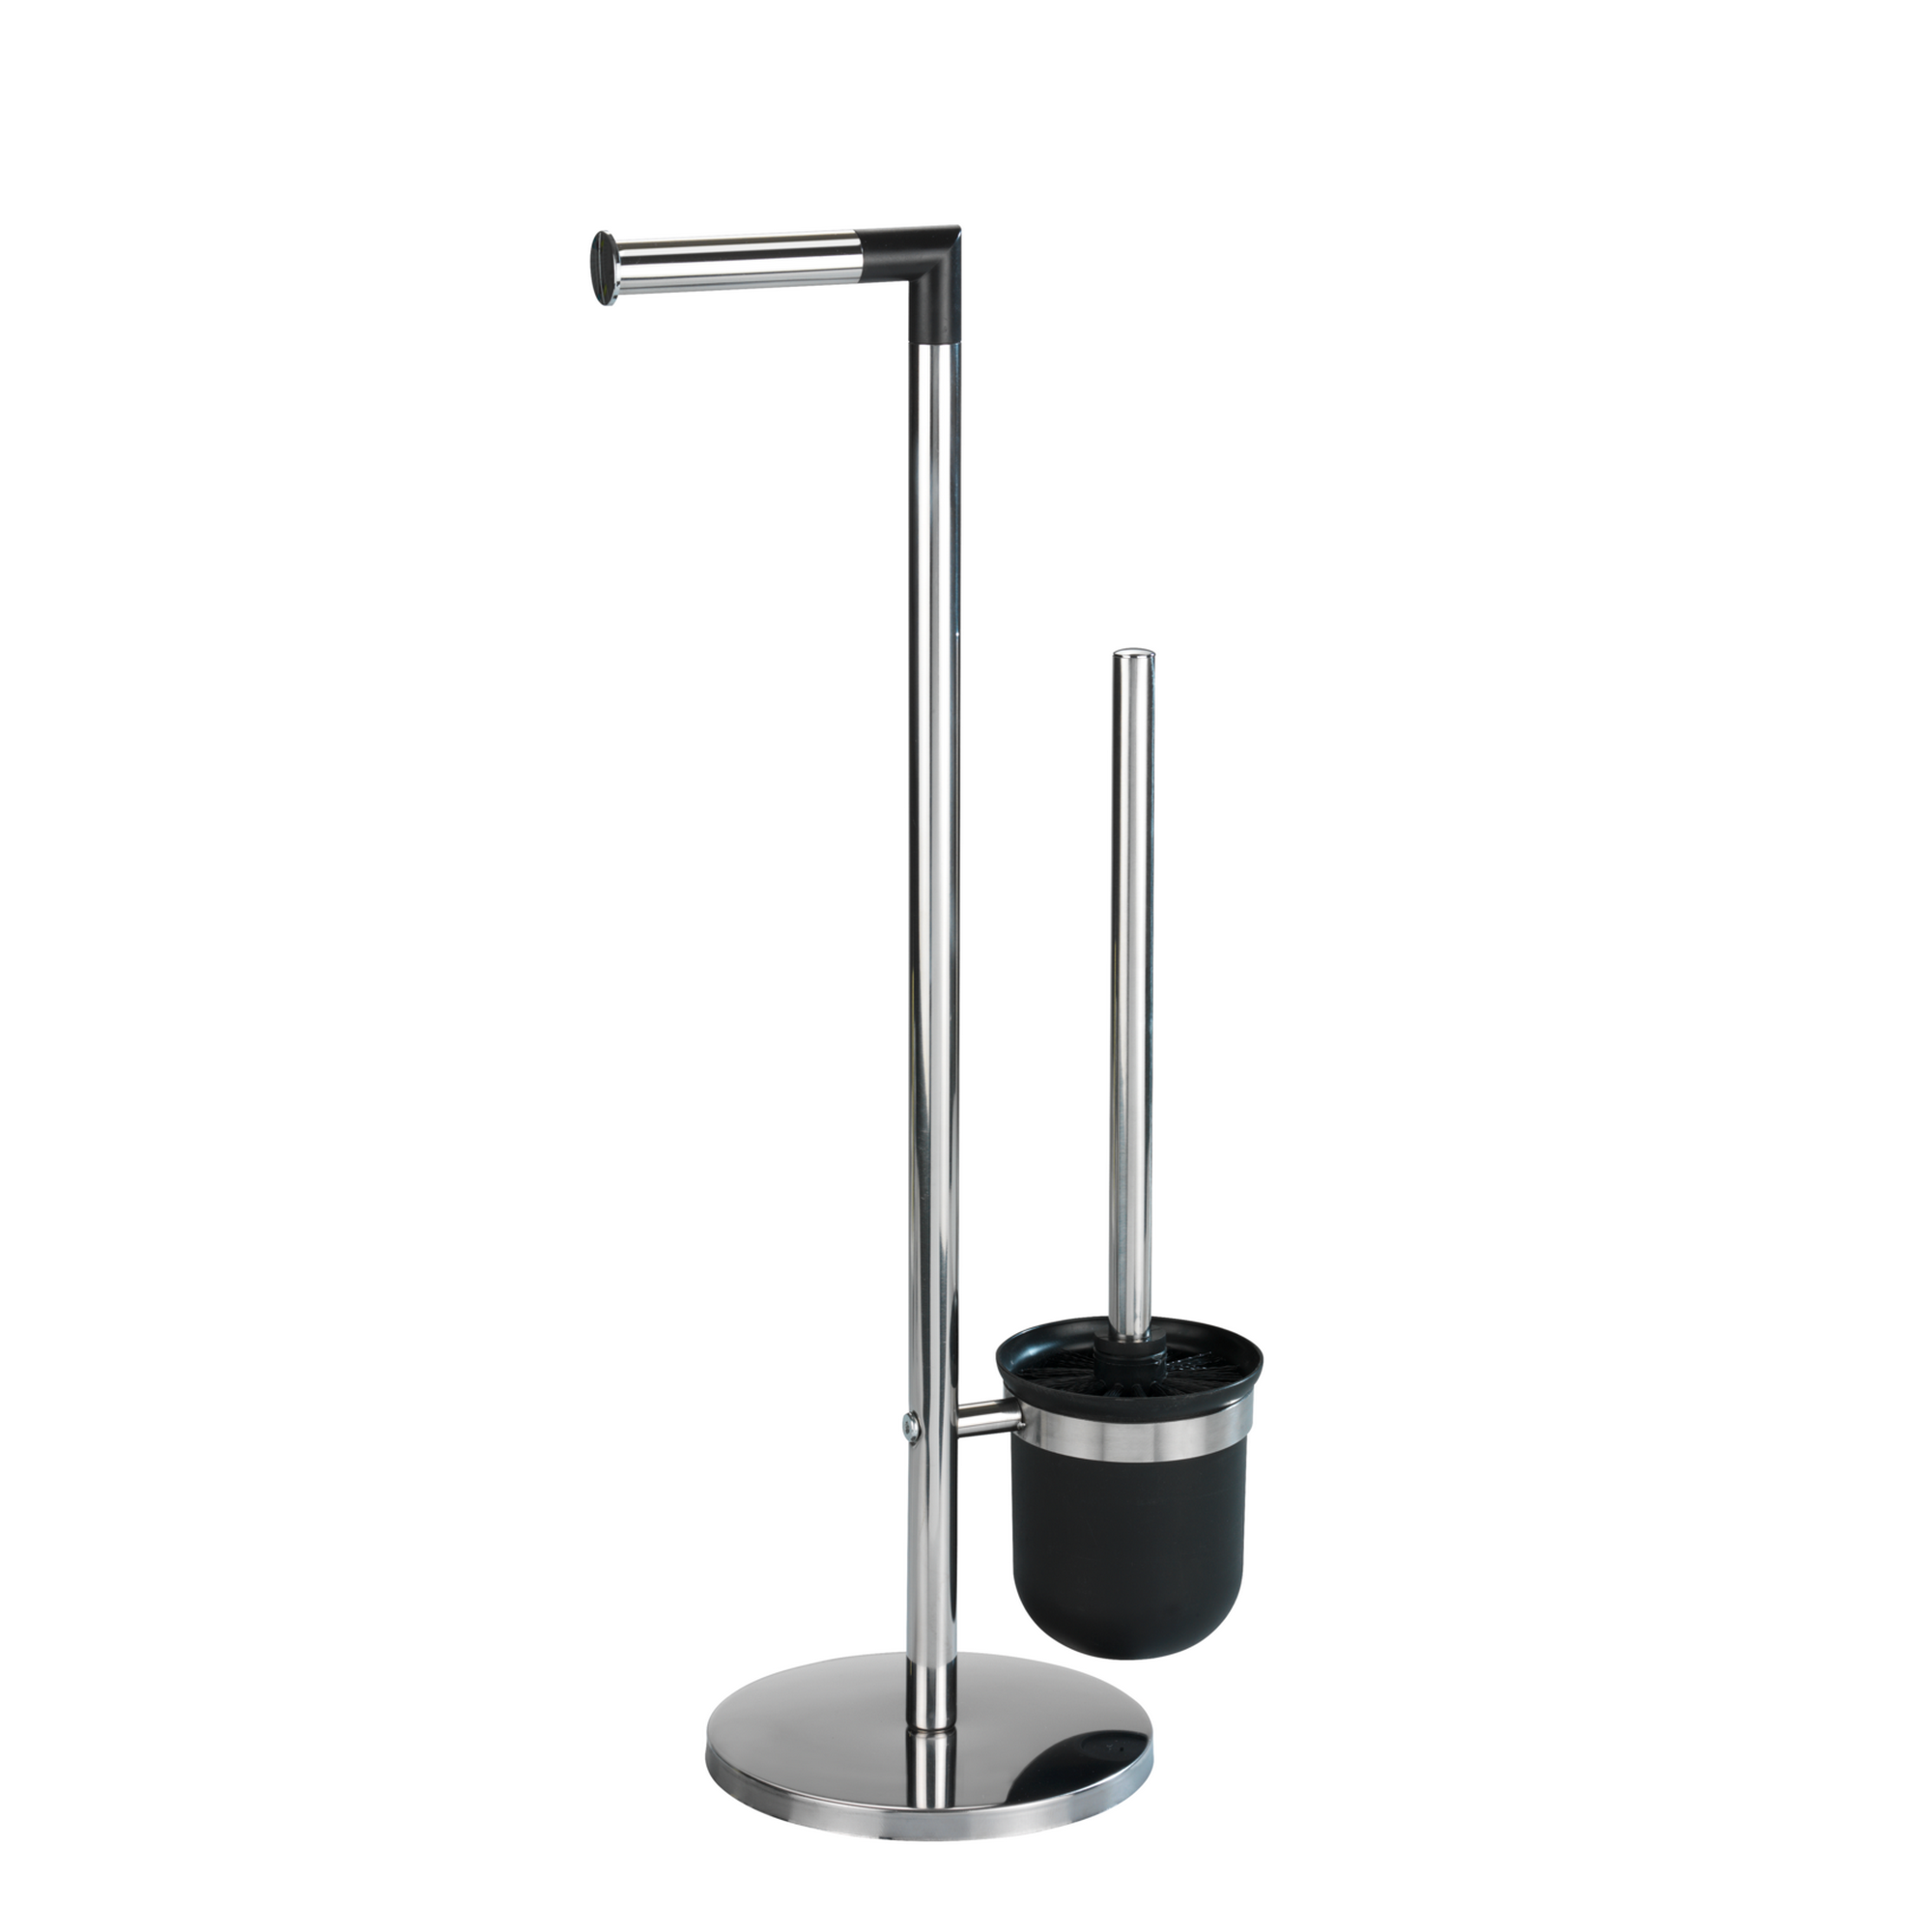 Stand WC-Garnitur 'Parus' Edelstahl glänzend + product picture